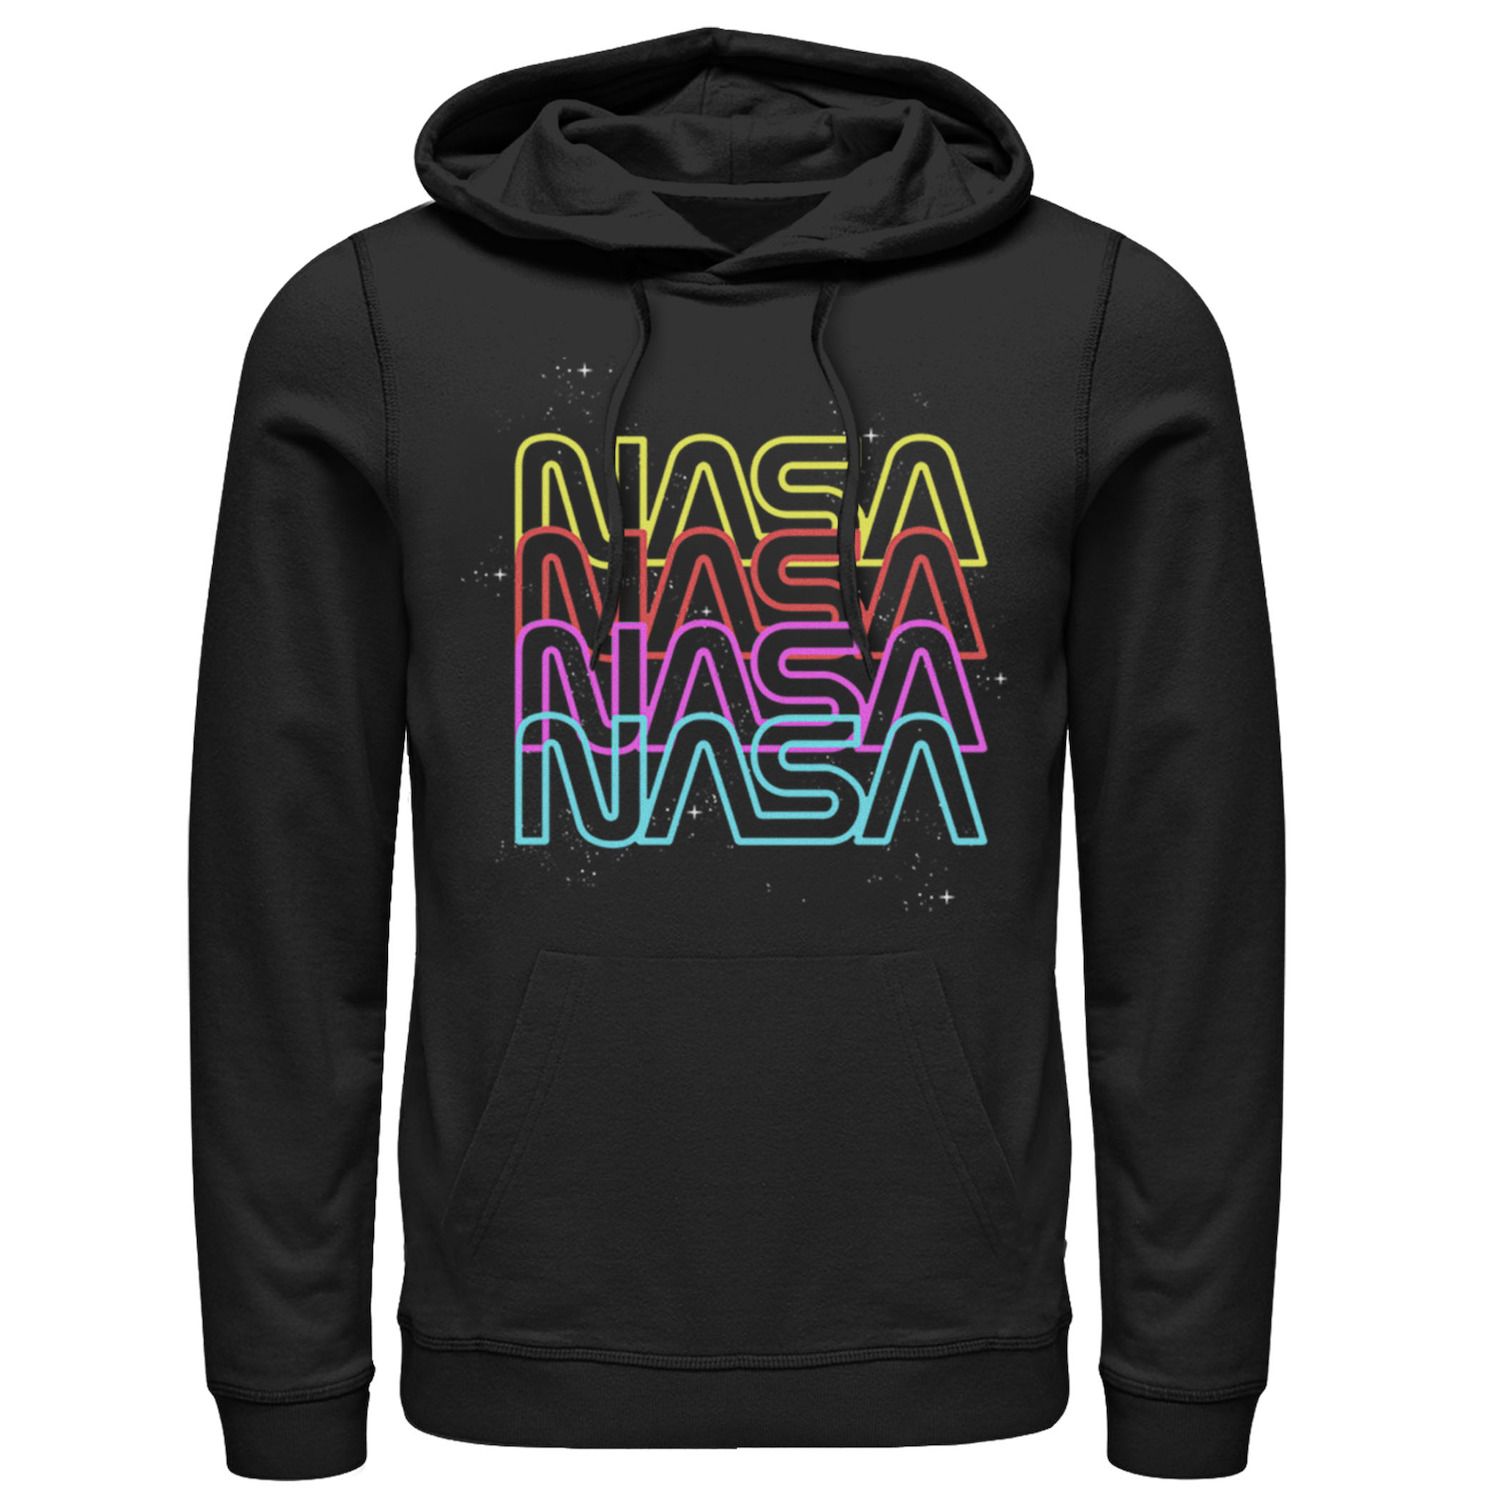 Мужская худи с графическим рисунком и неоновым логотипом NASA NASA Licensed Character